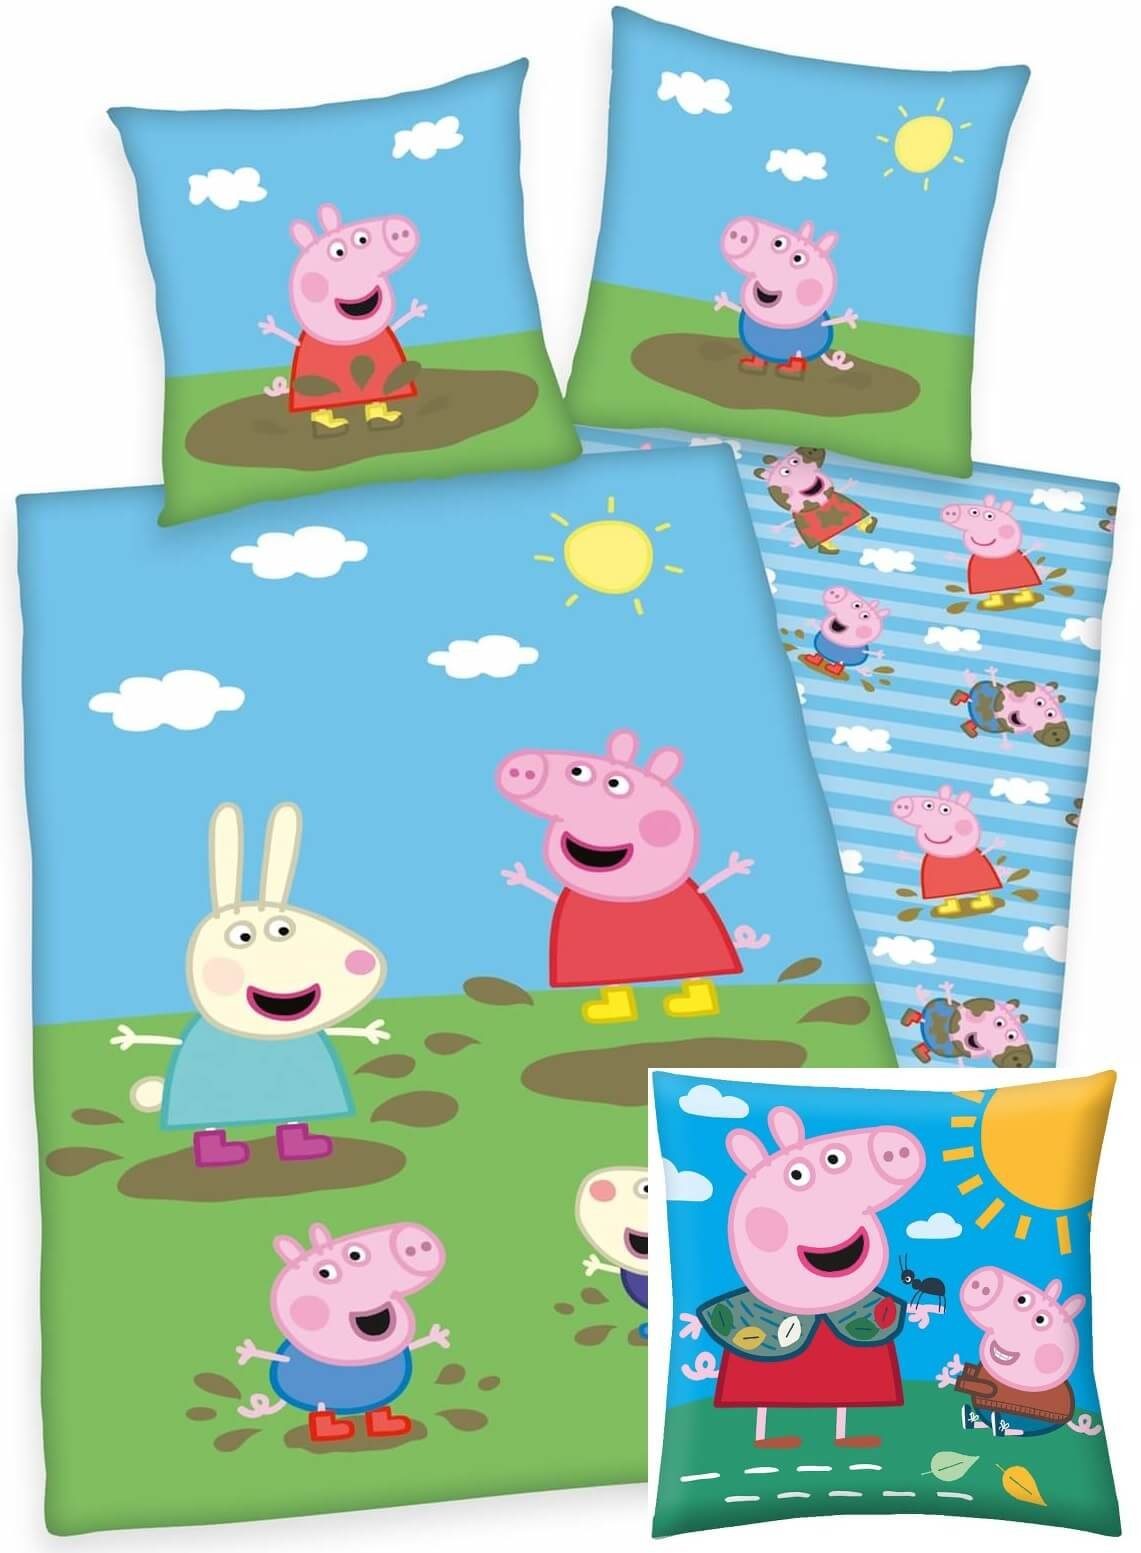 Kinderbettwäsche Peppa Wutz Pig - Kinder-Bettwäsche-Set, 135x200 und  Kuschelkissen, 40x40 cm, Peppa Pig, Baumwolle, 100% Baumwolle